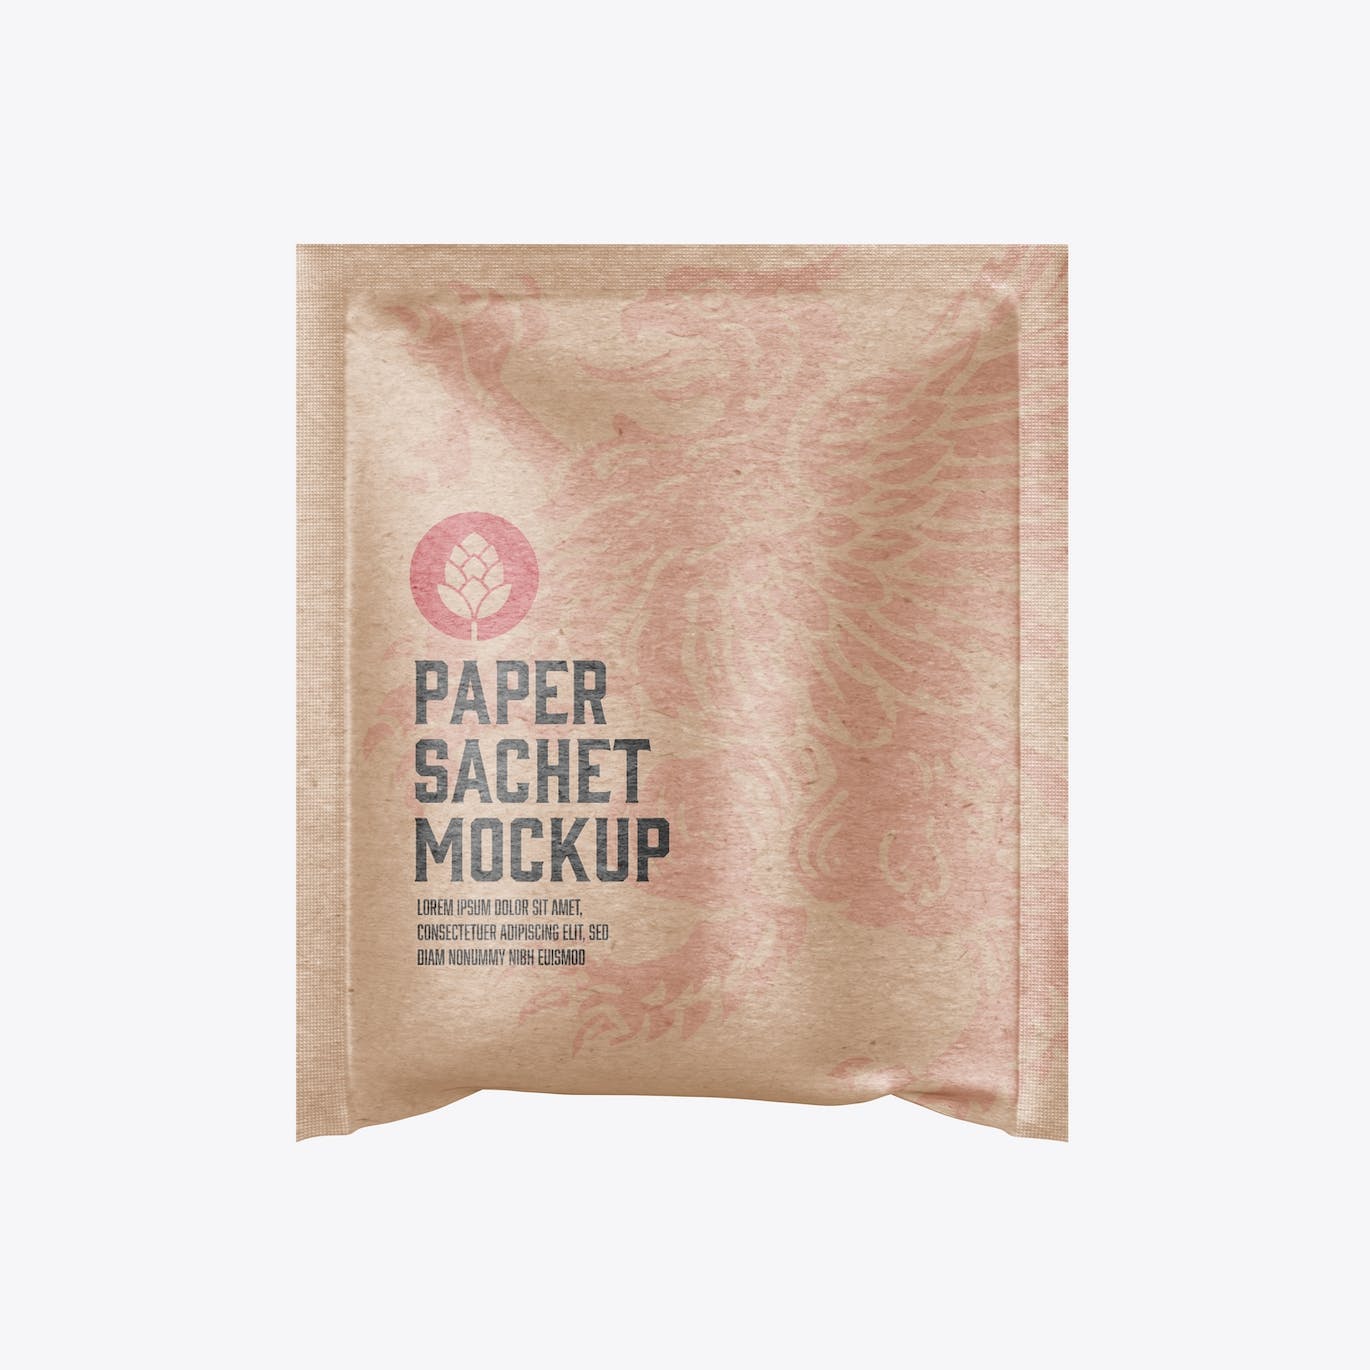 牛皮纸袋包装设计样机图 Kraft Sachet Mockup 样机素材 第6张